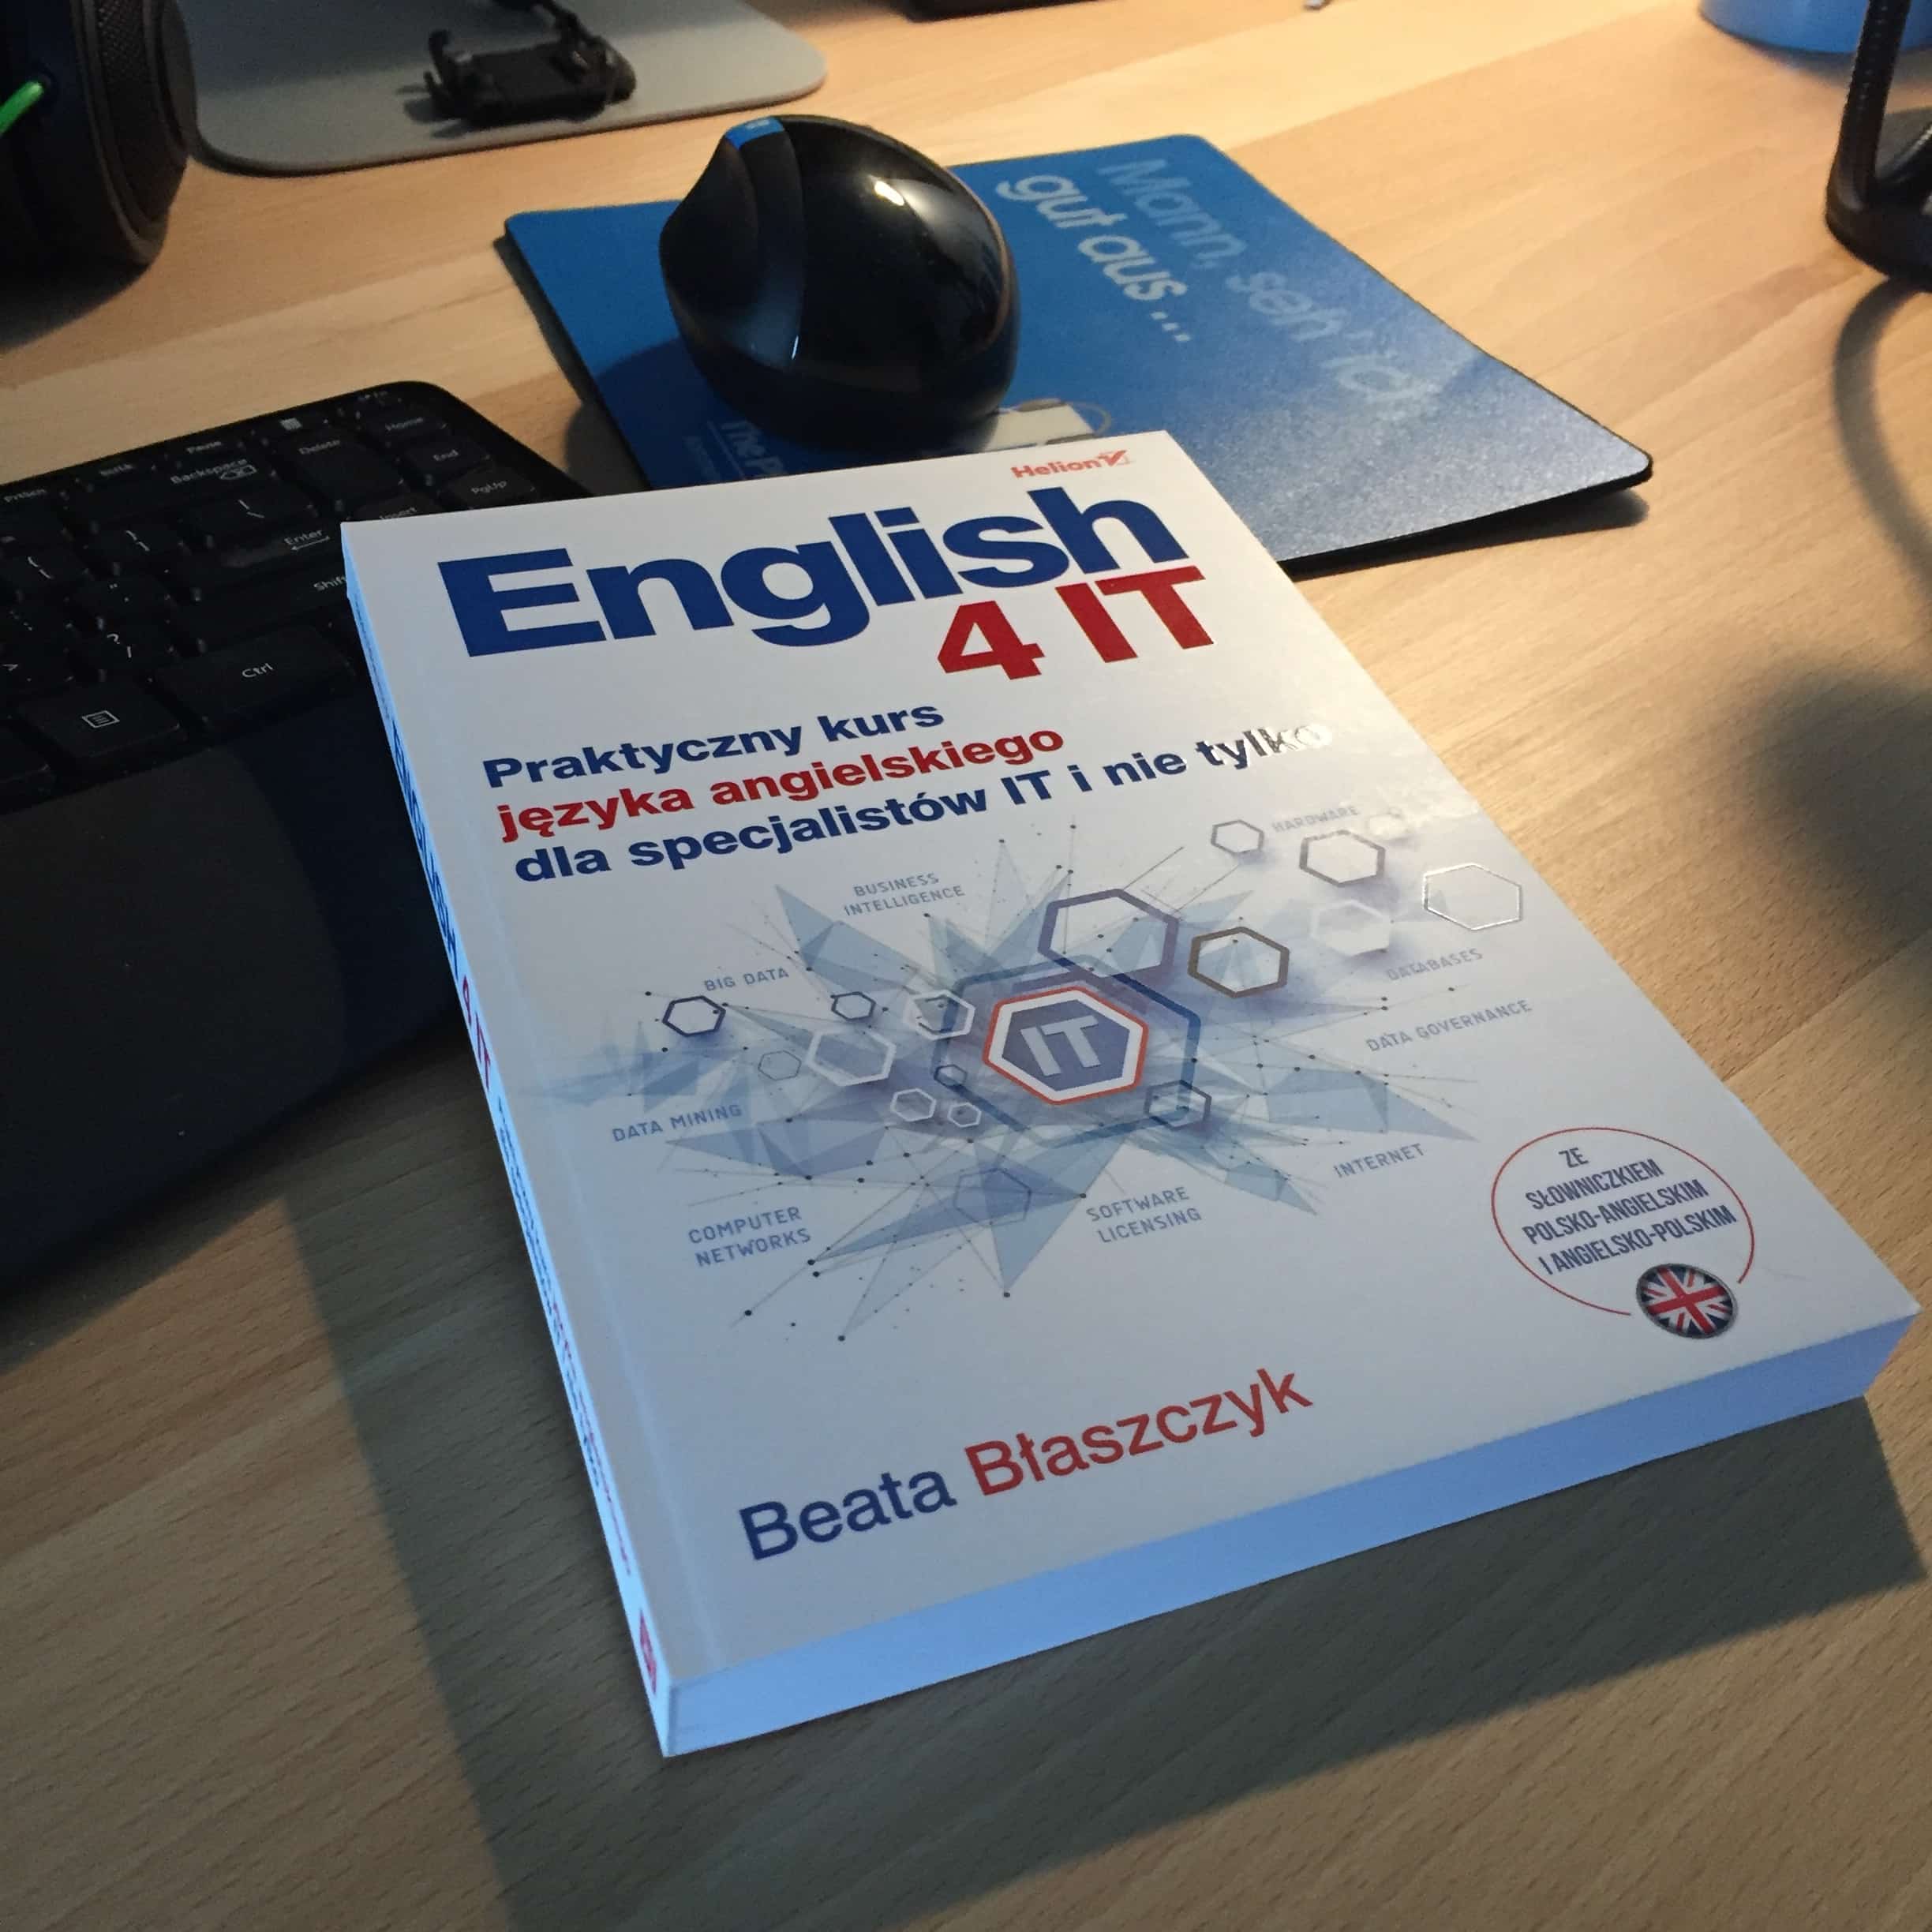 english 4 it - książka, na którą czekałem